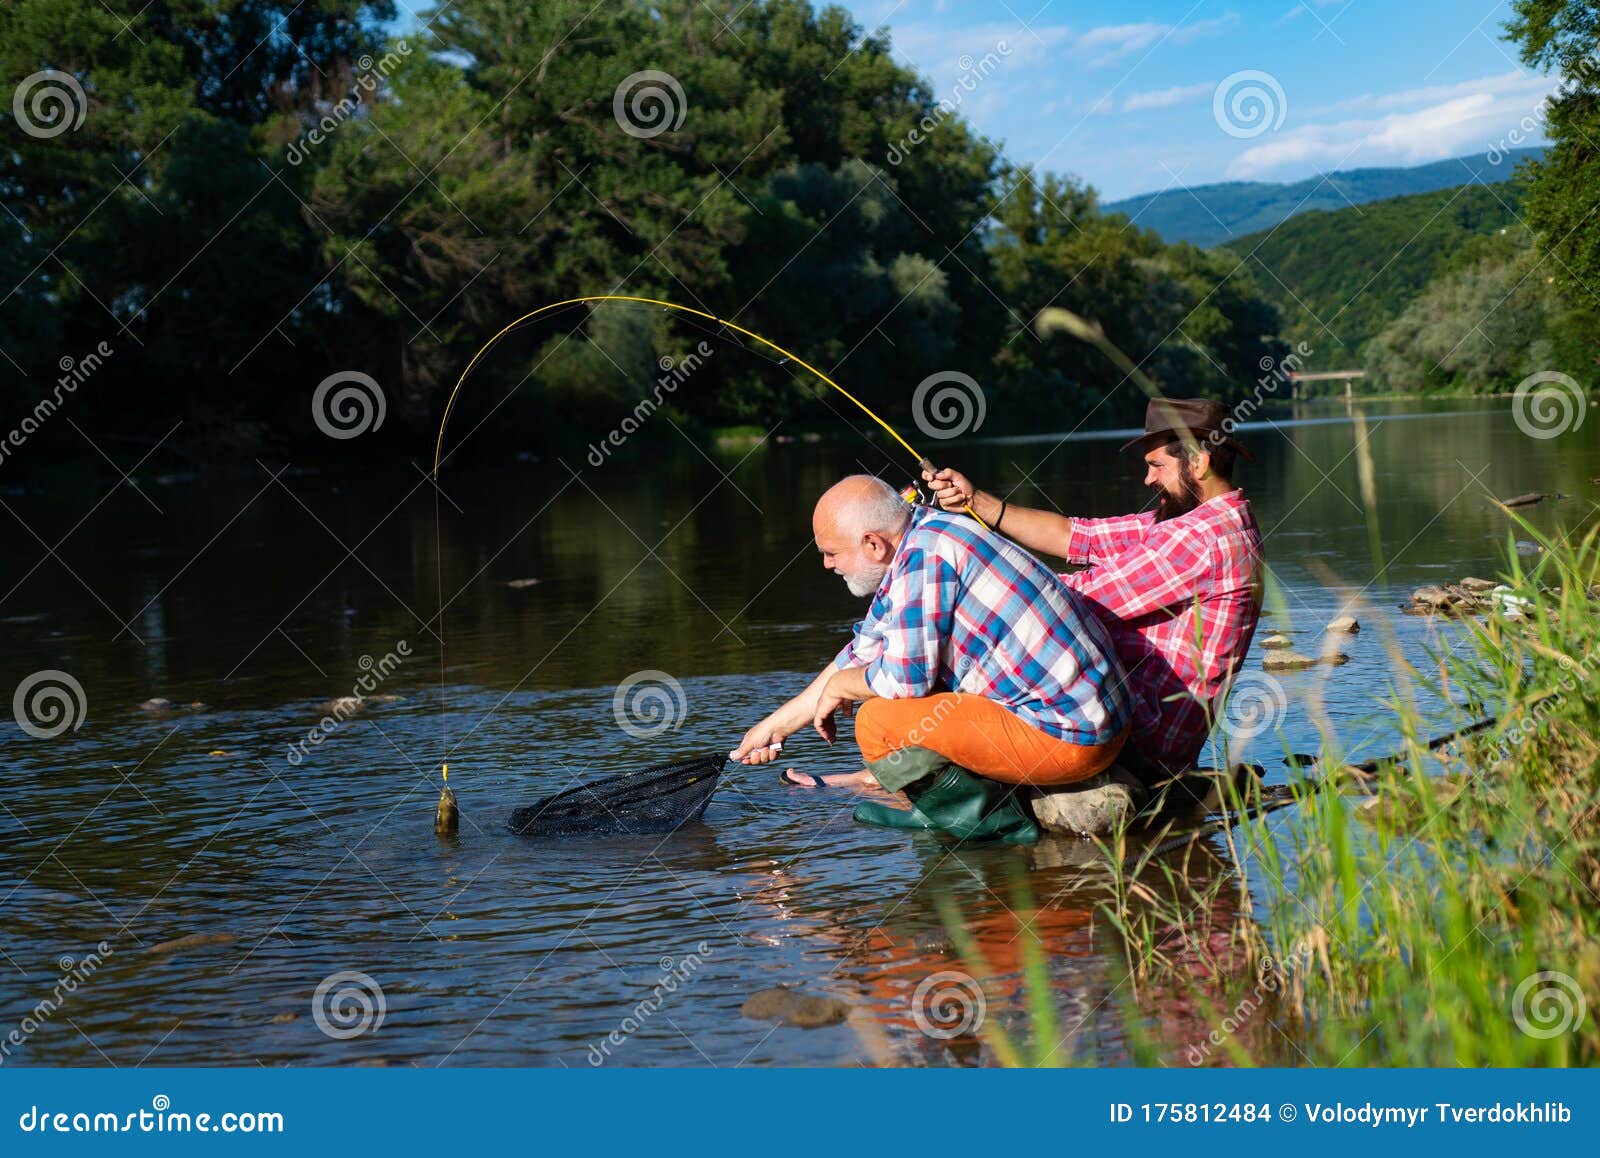 Men Fishing Relaxing while Enjoying Hobby. Fishing Freshwater Lake